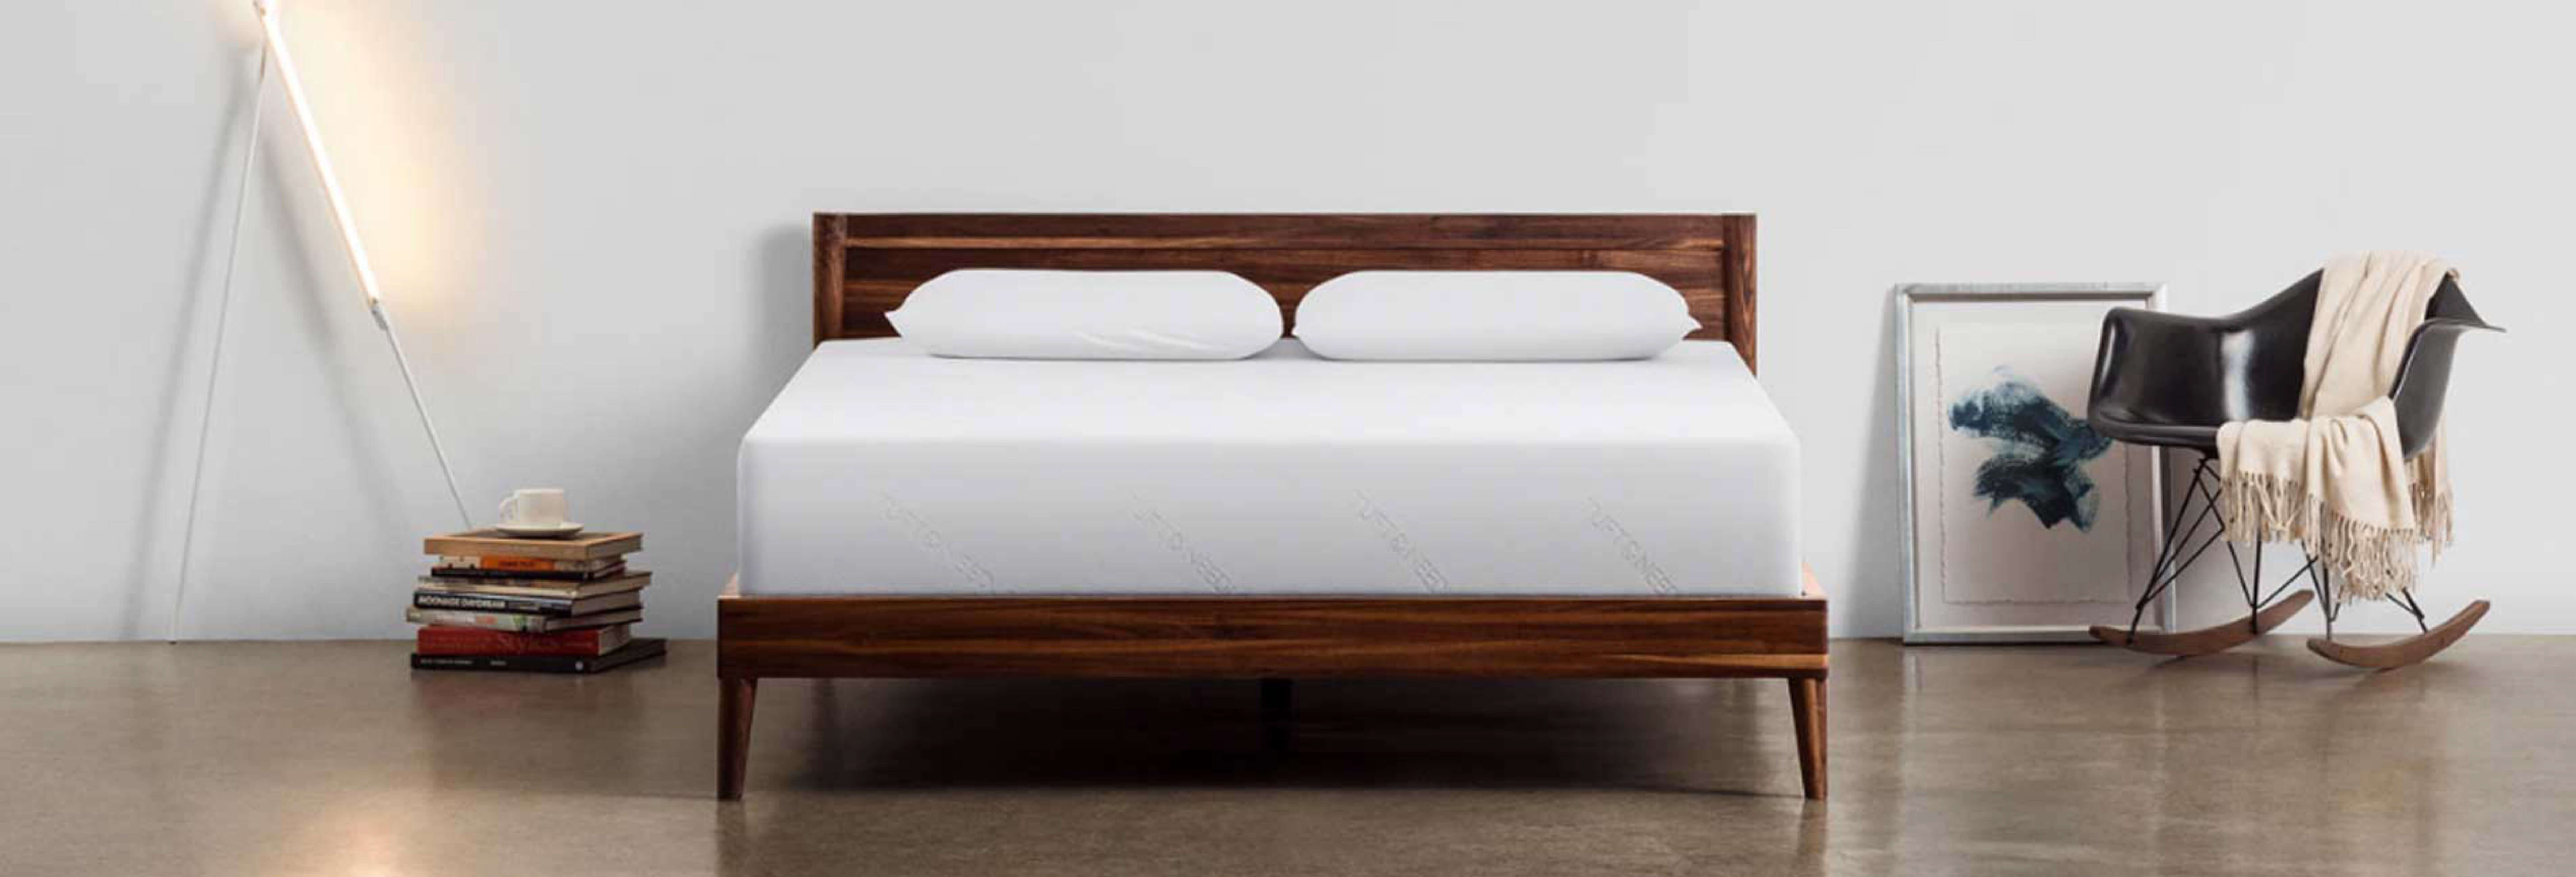 mattress on bedframe